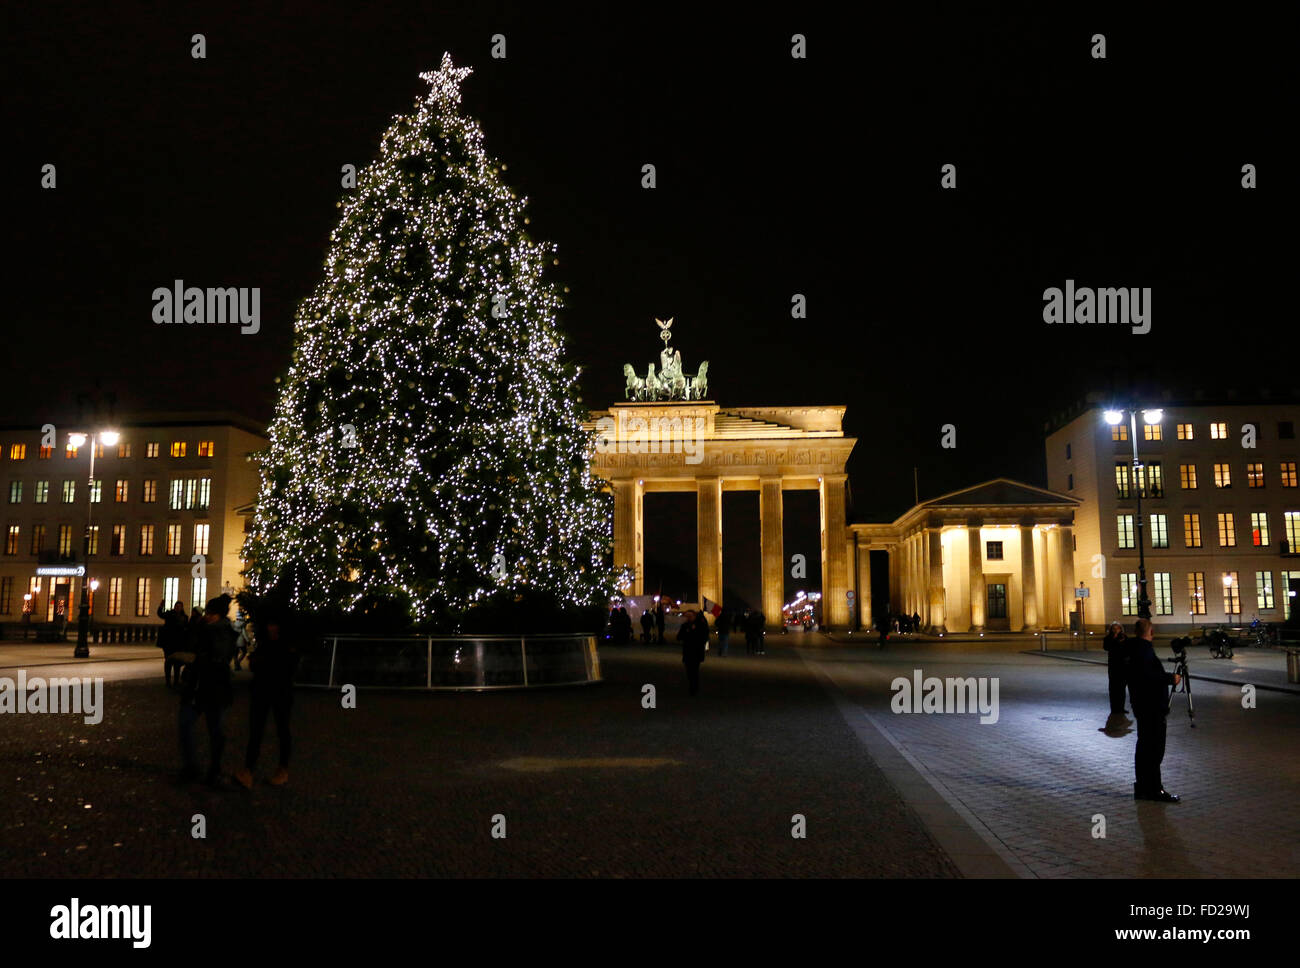 Weihnachtsdekoration: Weihnachtsbaum am Brandenburger Tor, Berlin. Stock Photo